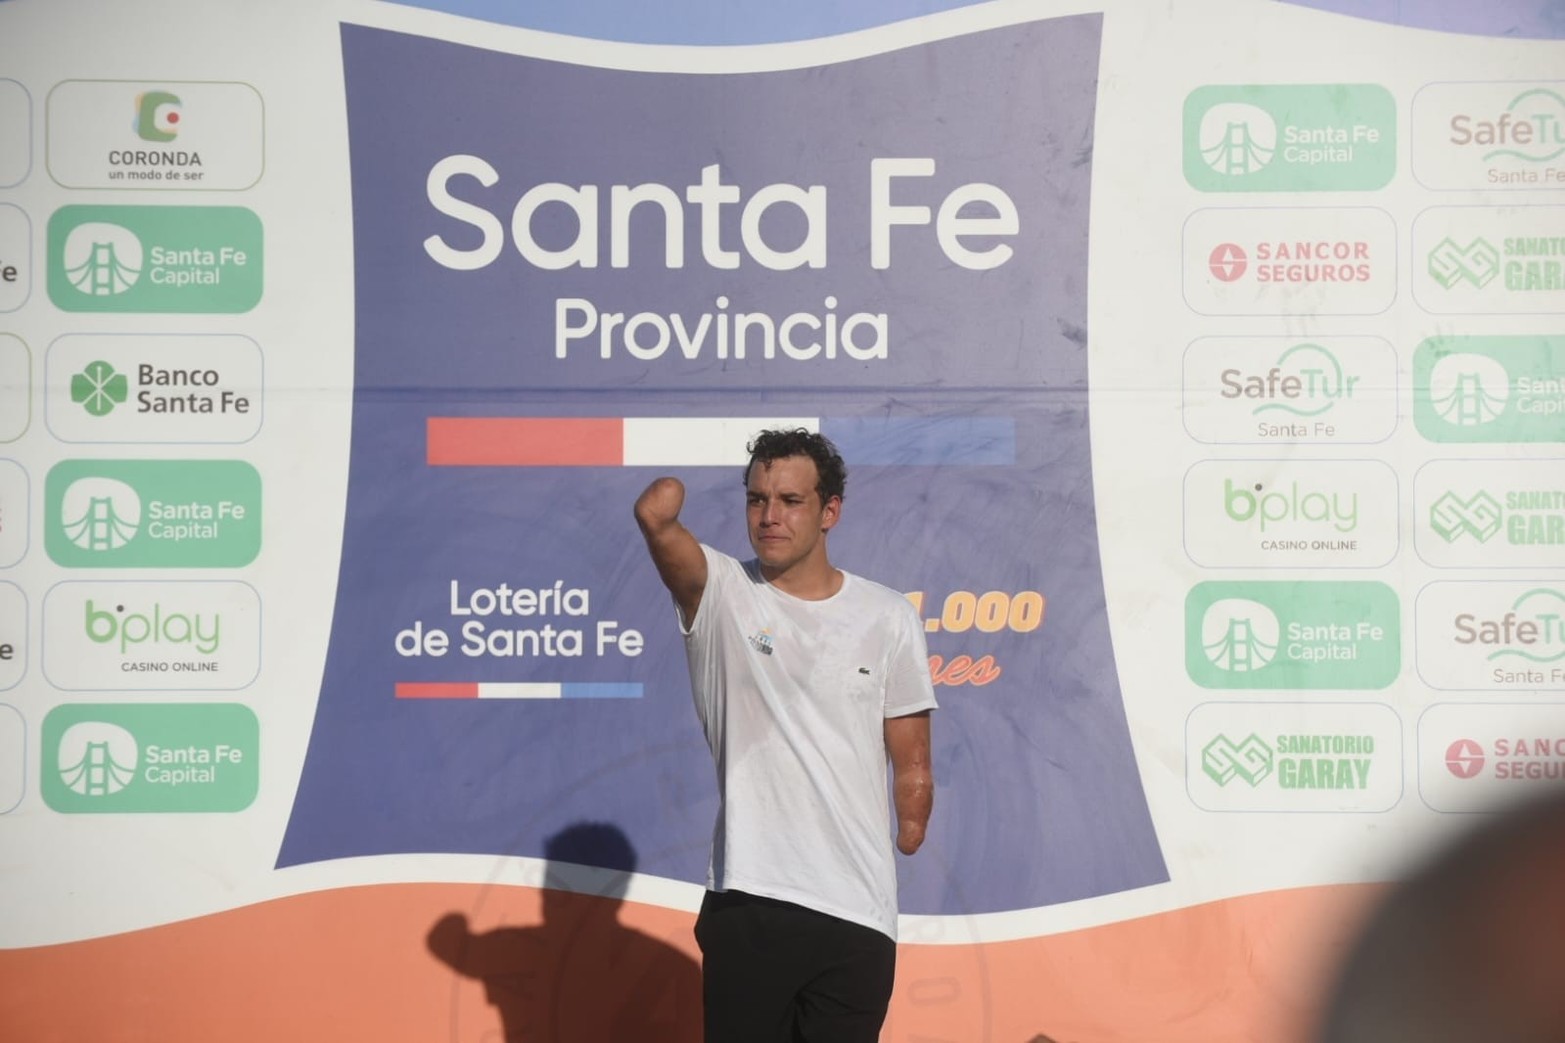 El argentino Matías Díaz Hernández ganó la 46a. edición de la Santa Fe - Coronda. La mejor entre las mujeres fue la santafesina Erika Yenssen. El nadador paralímpico Theo Curin cumplió su objetivo al arribar a Coronda.